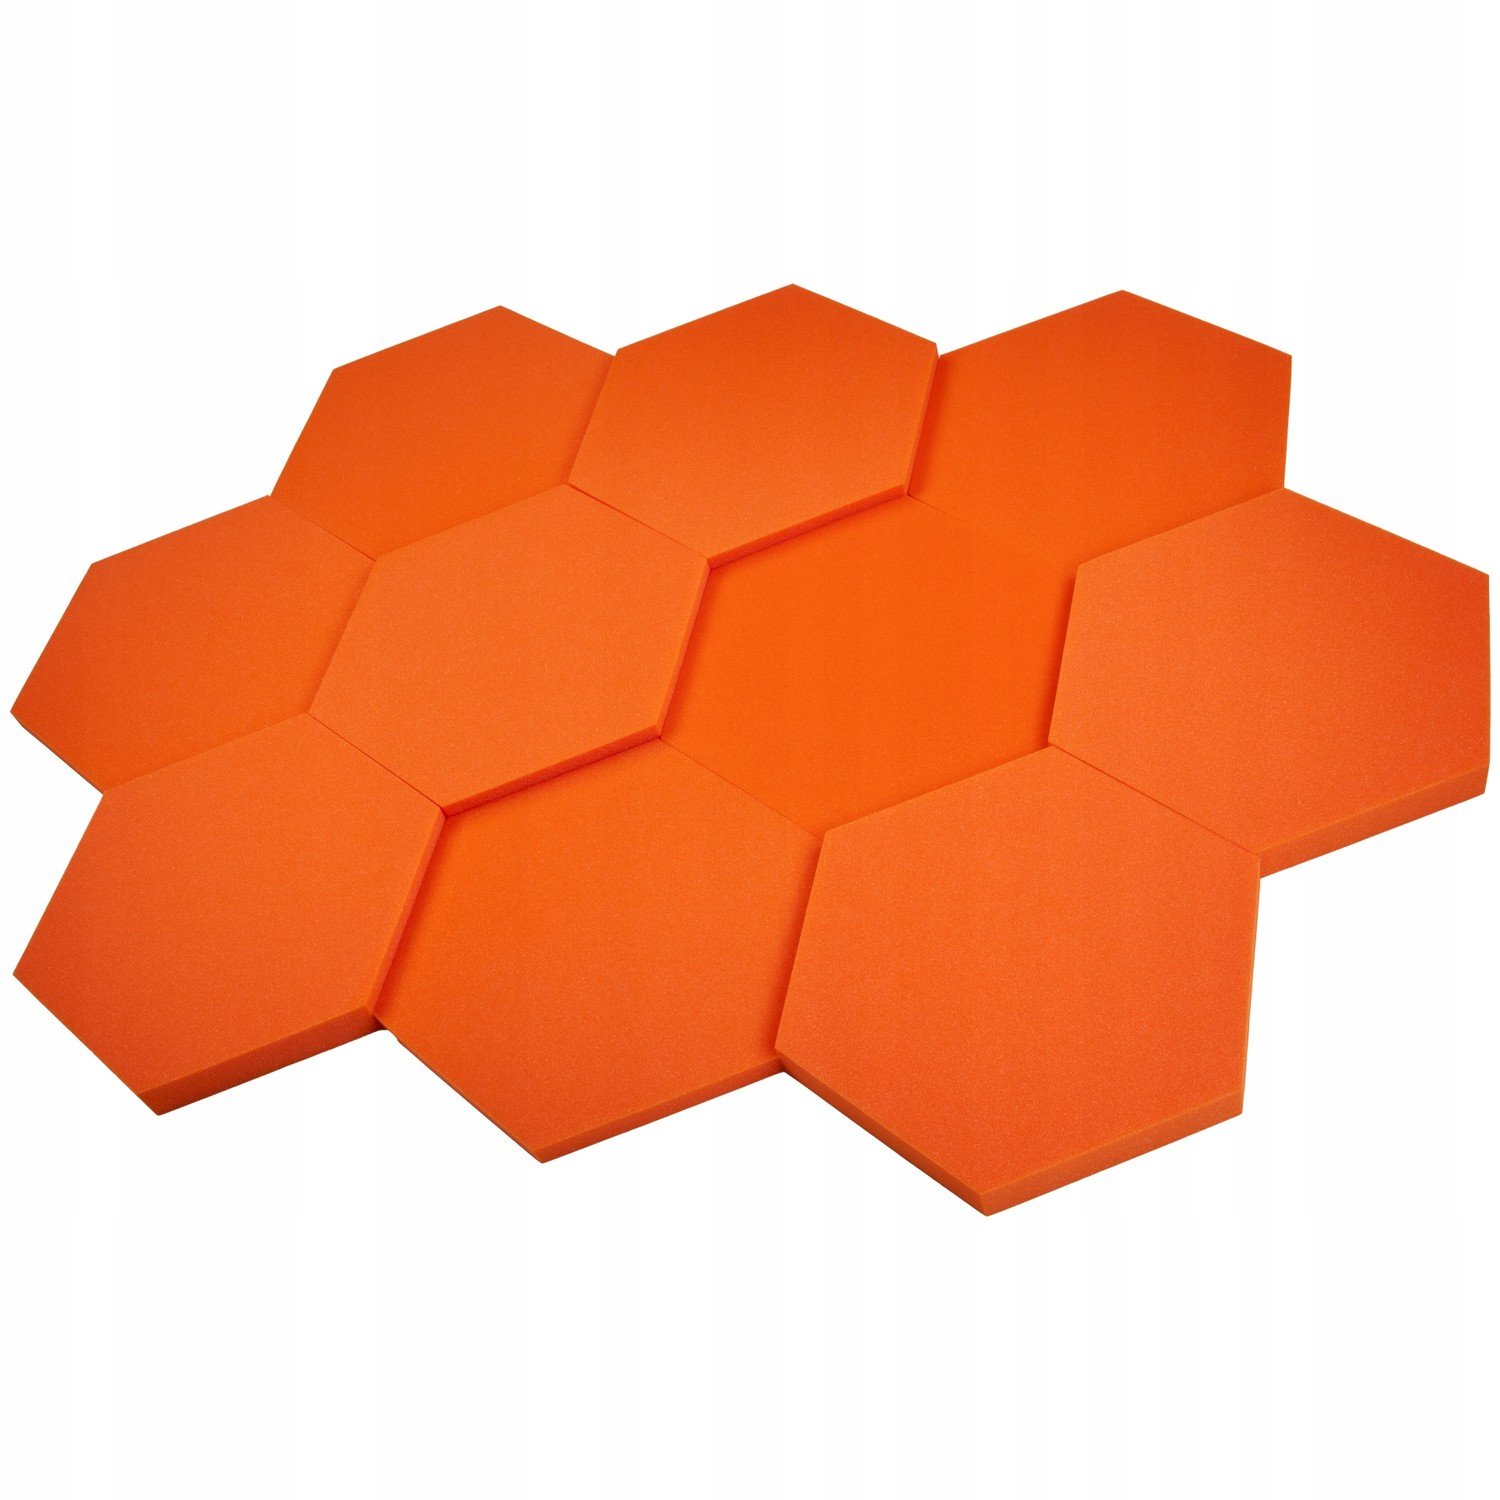 Hexagonální akustické panely o průměru 50 cm